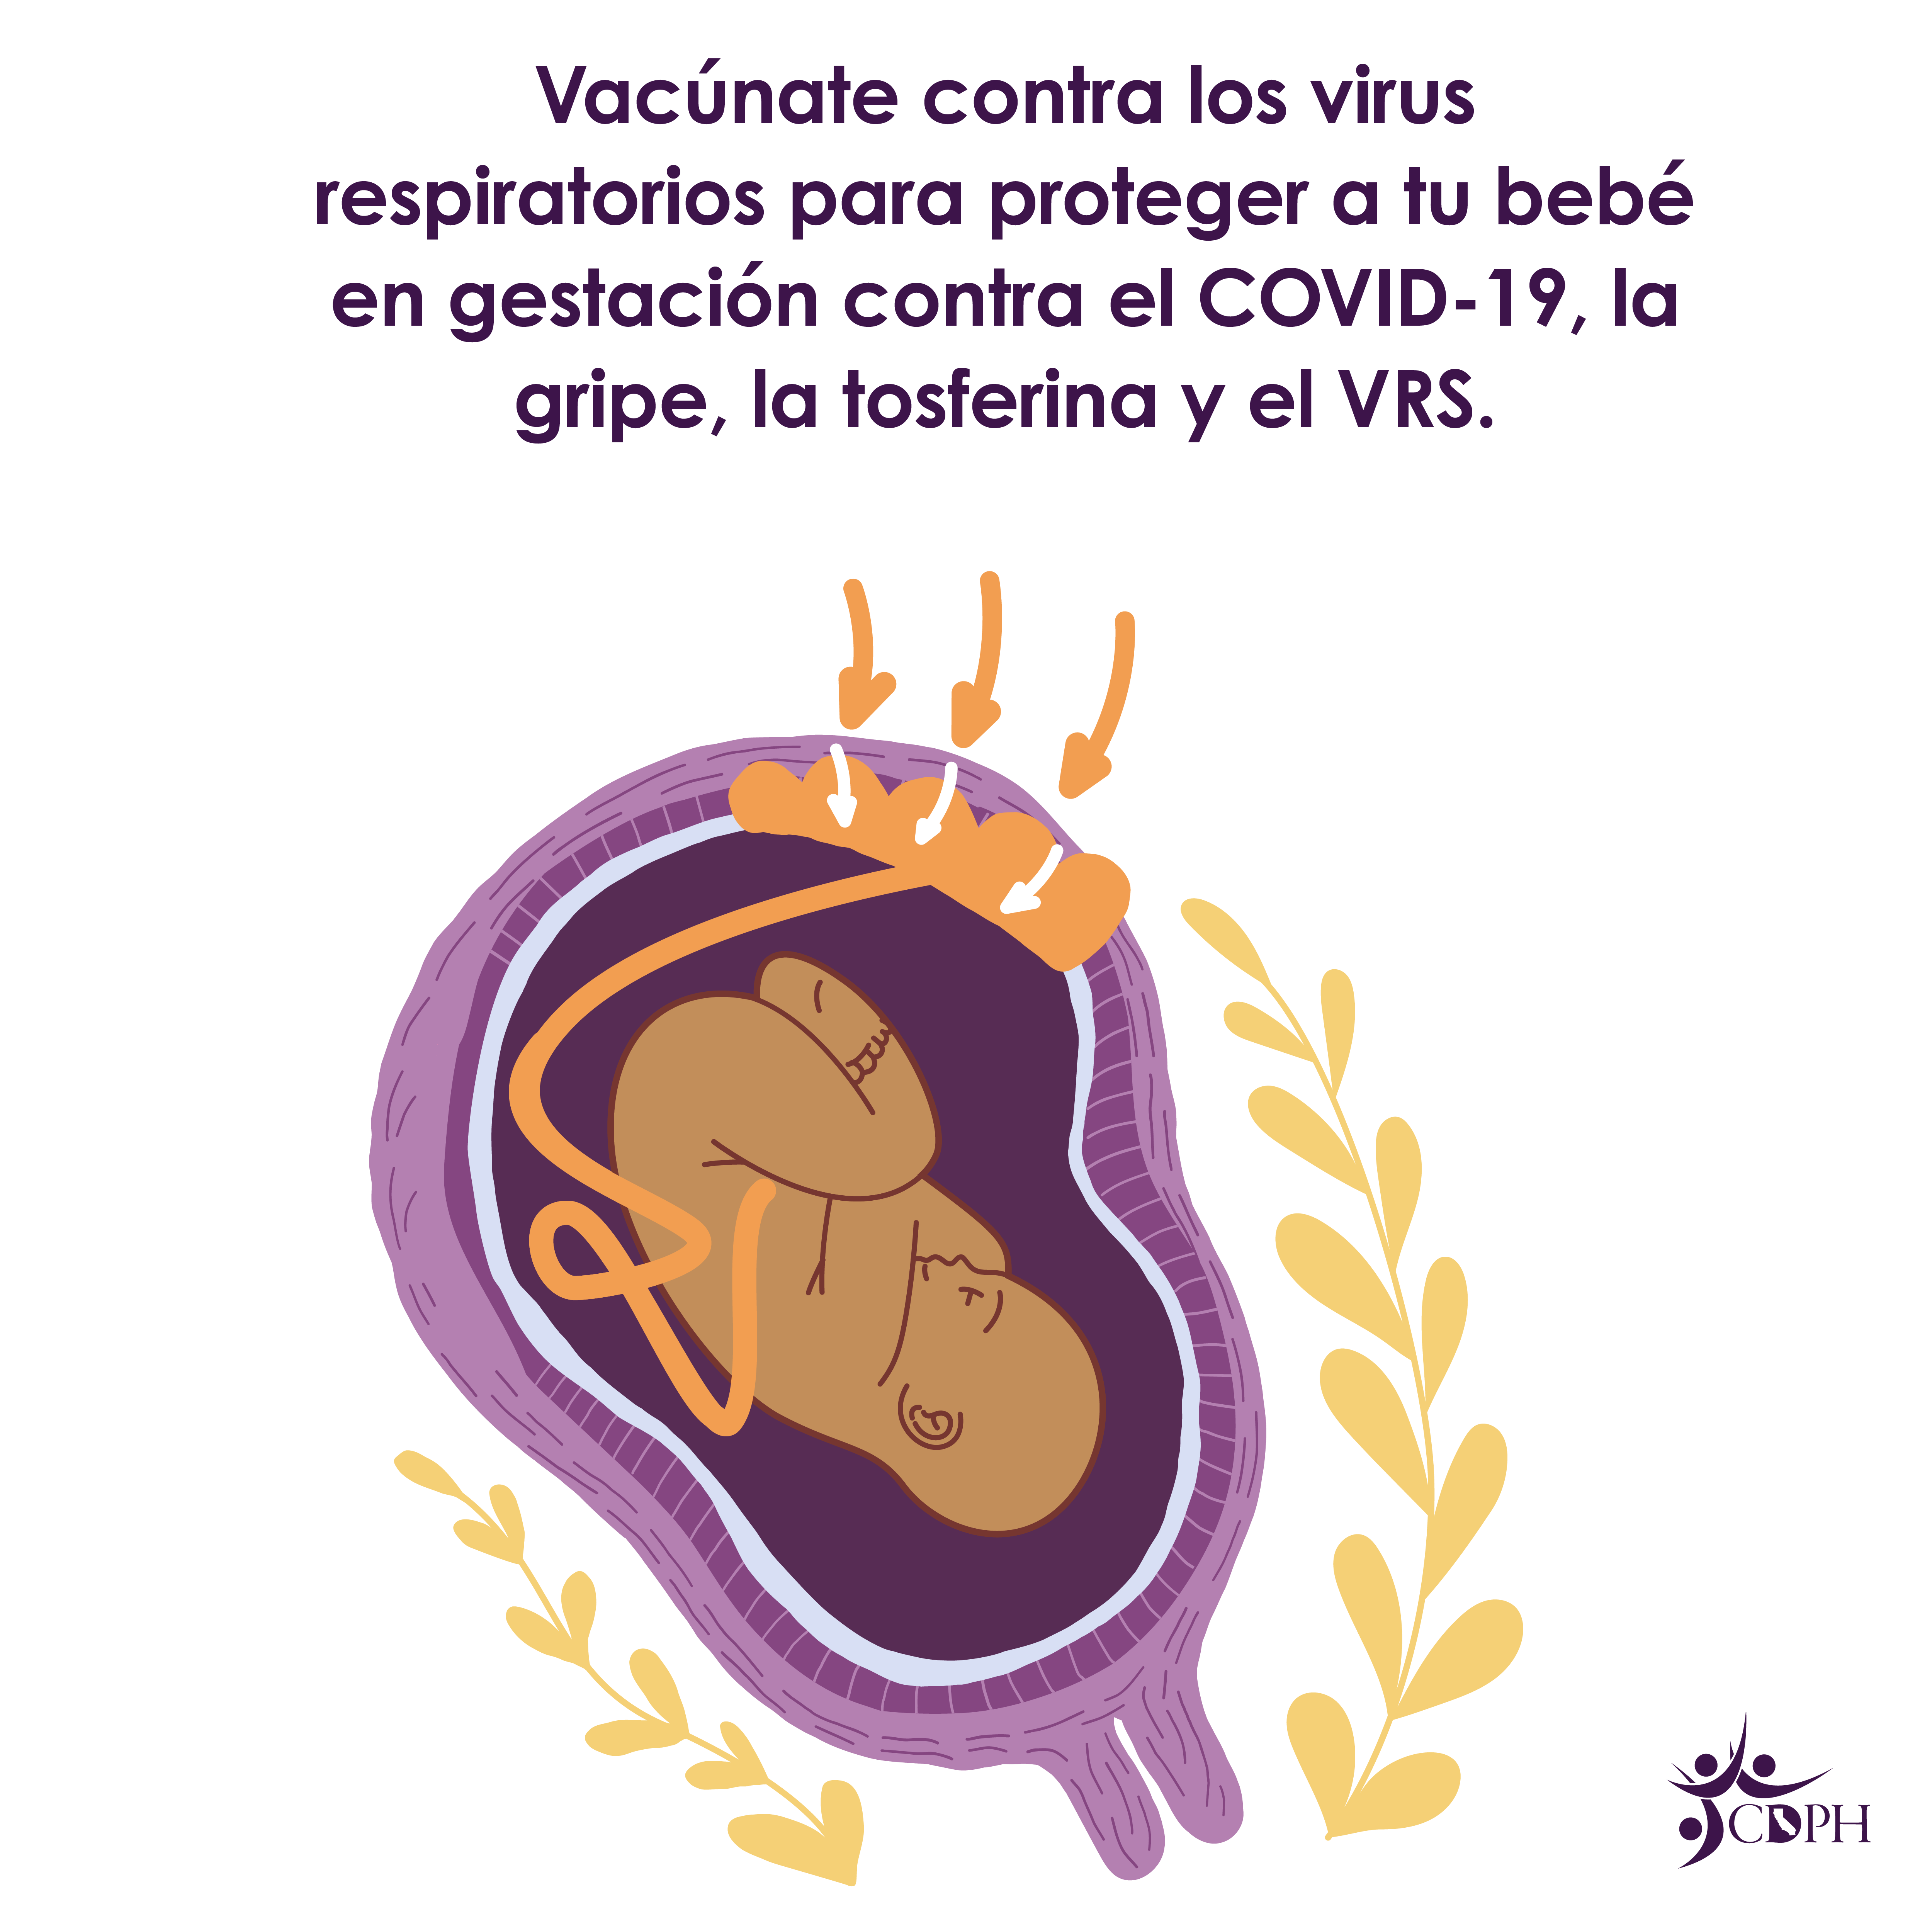 Las personas embarazadas vacunadas transmiten anticuerpos a sus bebés en gestación